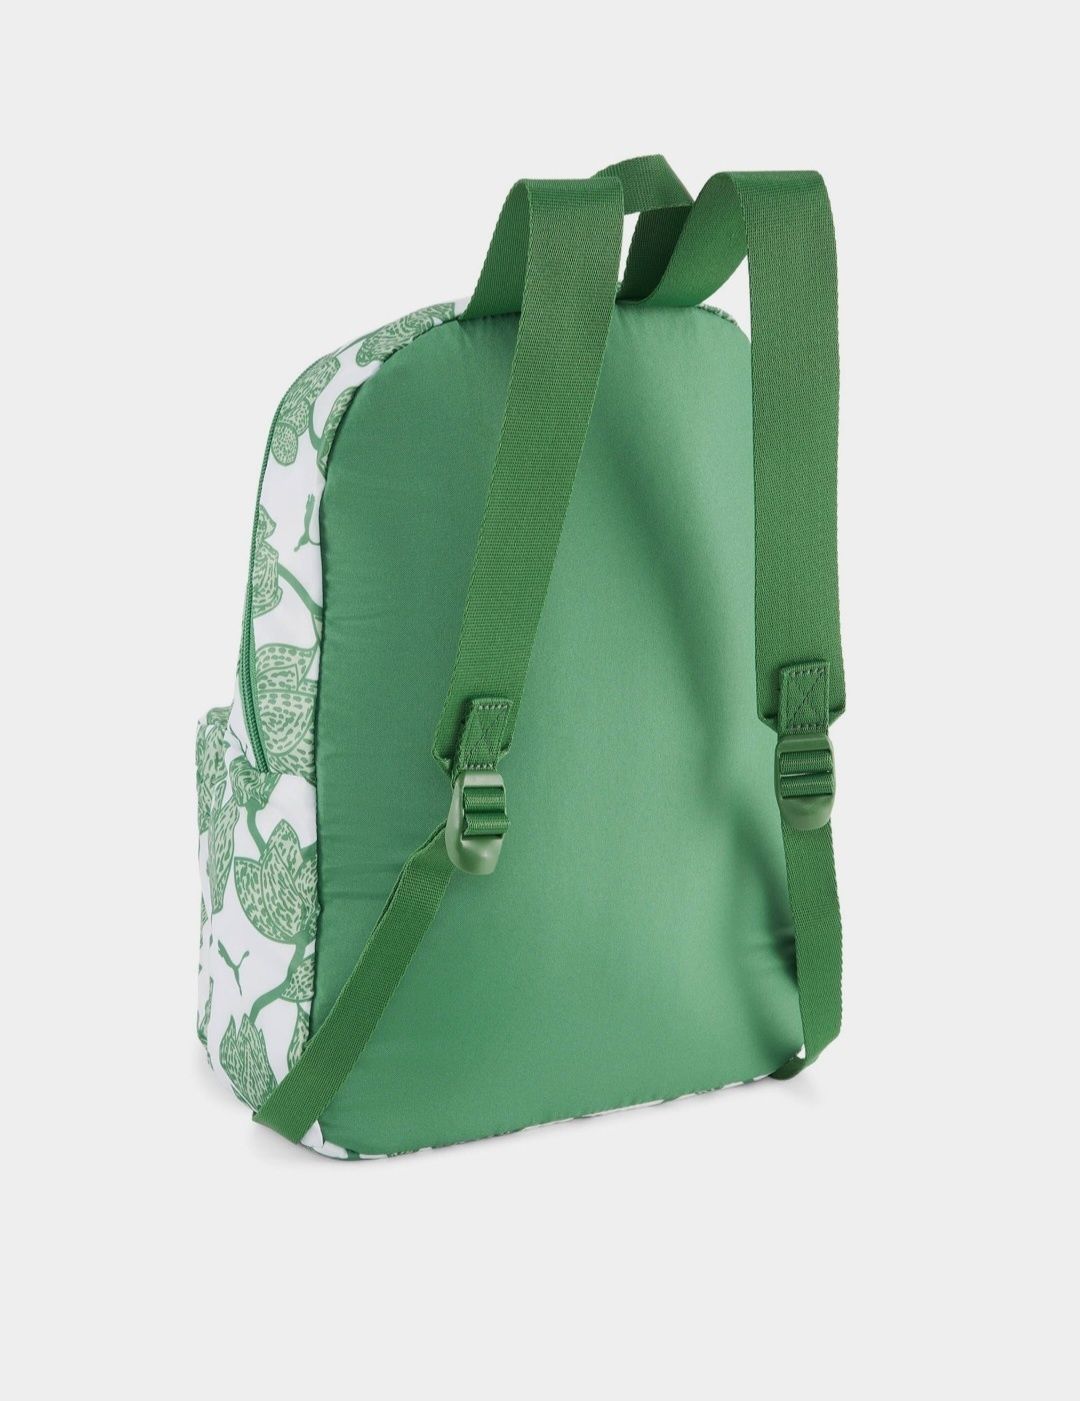 фірмовий рюкзак puma оригінал 
класне забарвлення 
свіжі літні кольори